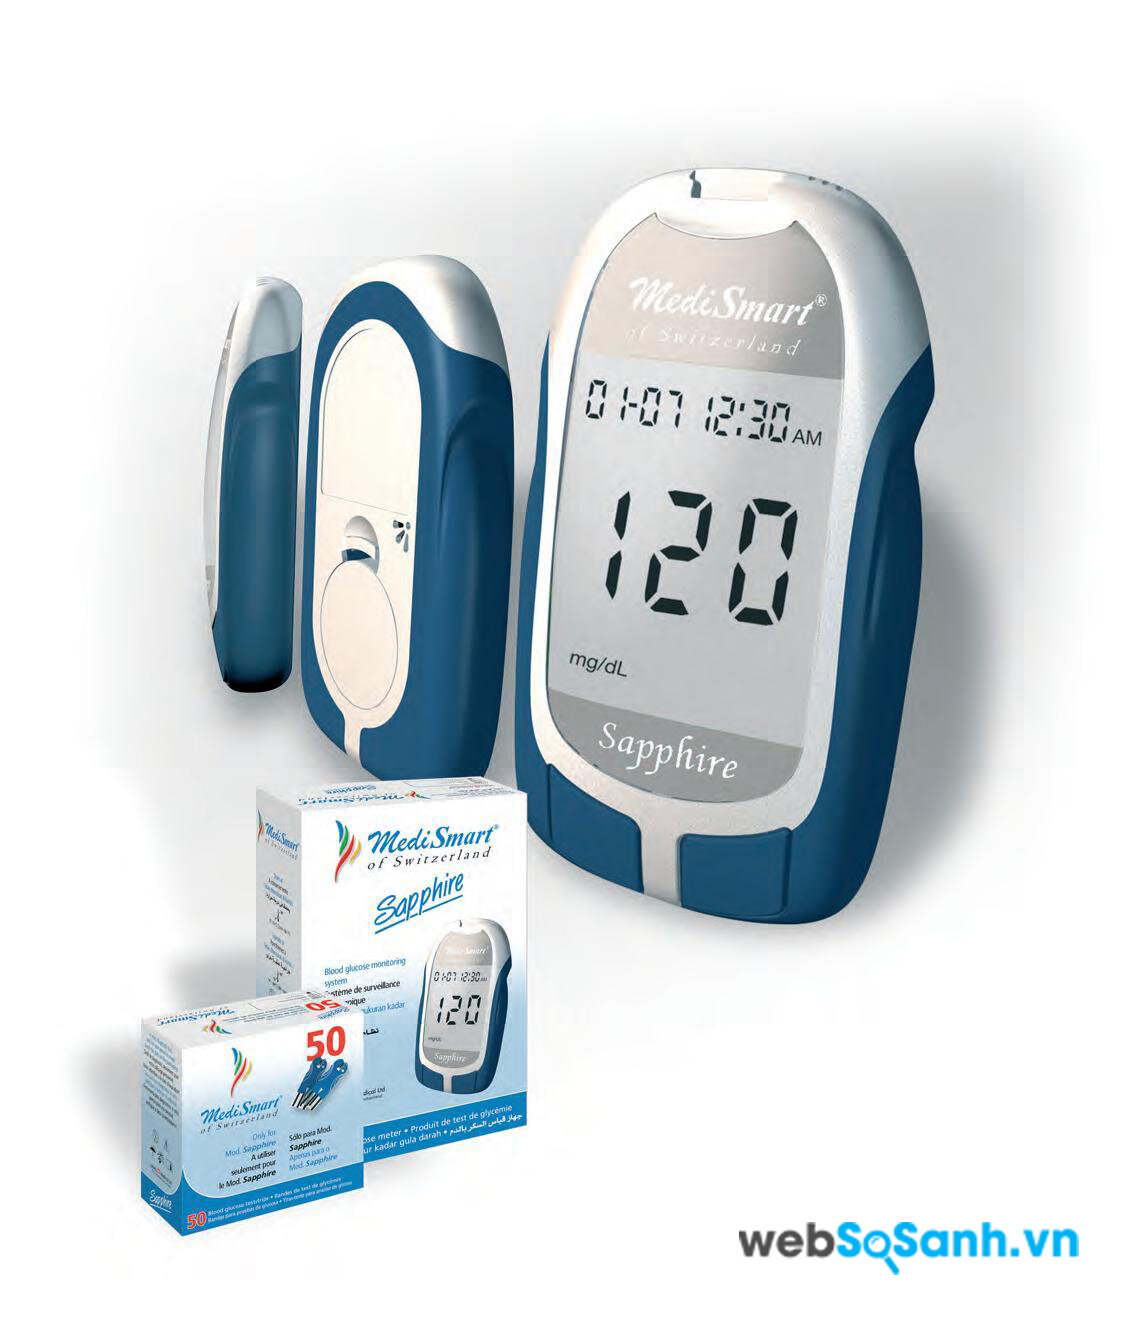 Nên chọn máy đo đường huyết là máy chính hãng